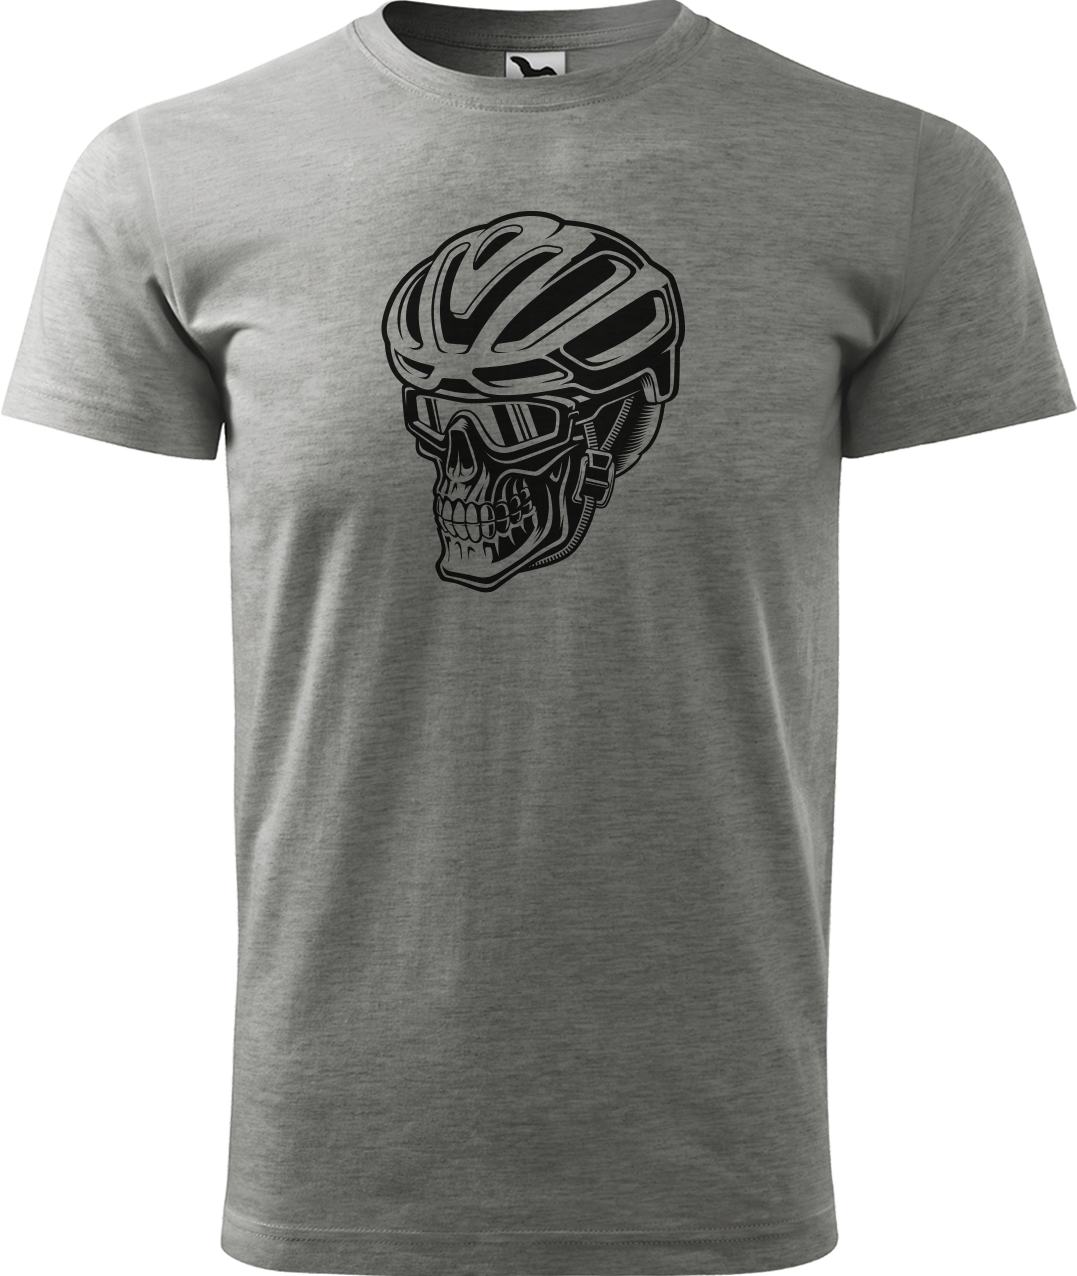 Pánské tričko pro cyklistu - Lebka v helmě Velikost: L, Barva: Tmavě šedý melír (12)